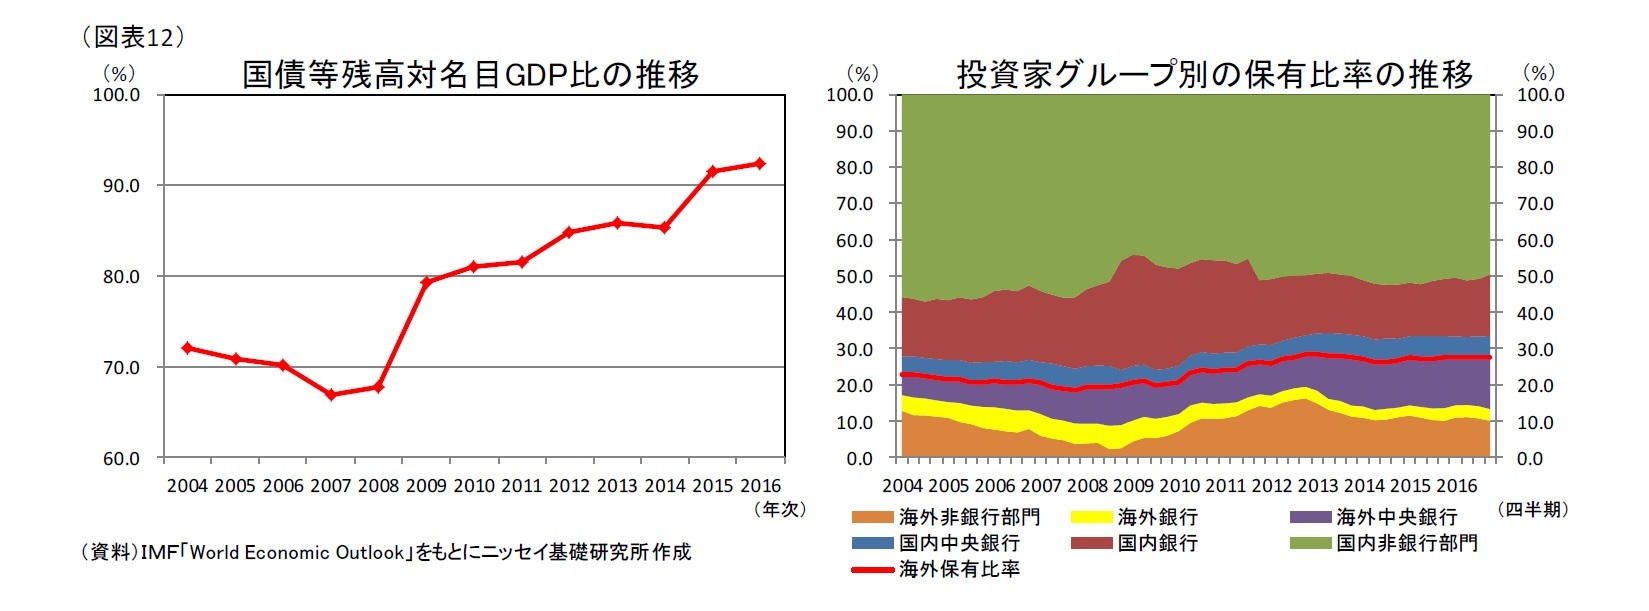 (図表12)国債等残高対名目GDP比の推移/投資家グループ別の保有比率の推移